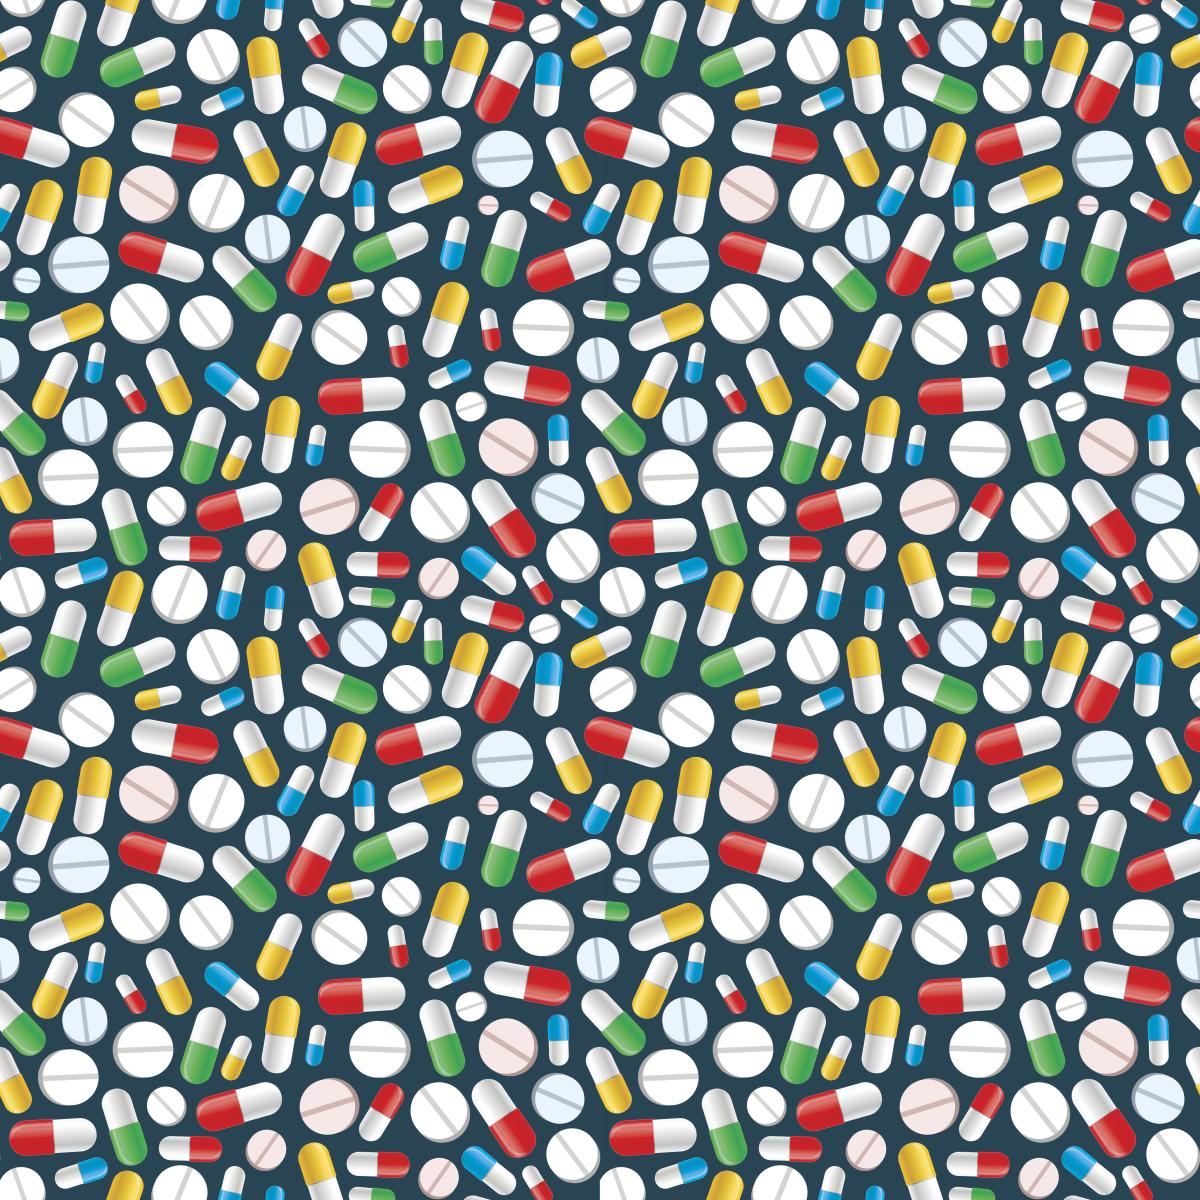 photo of pills